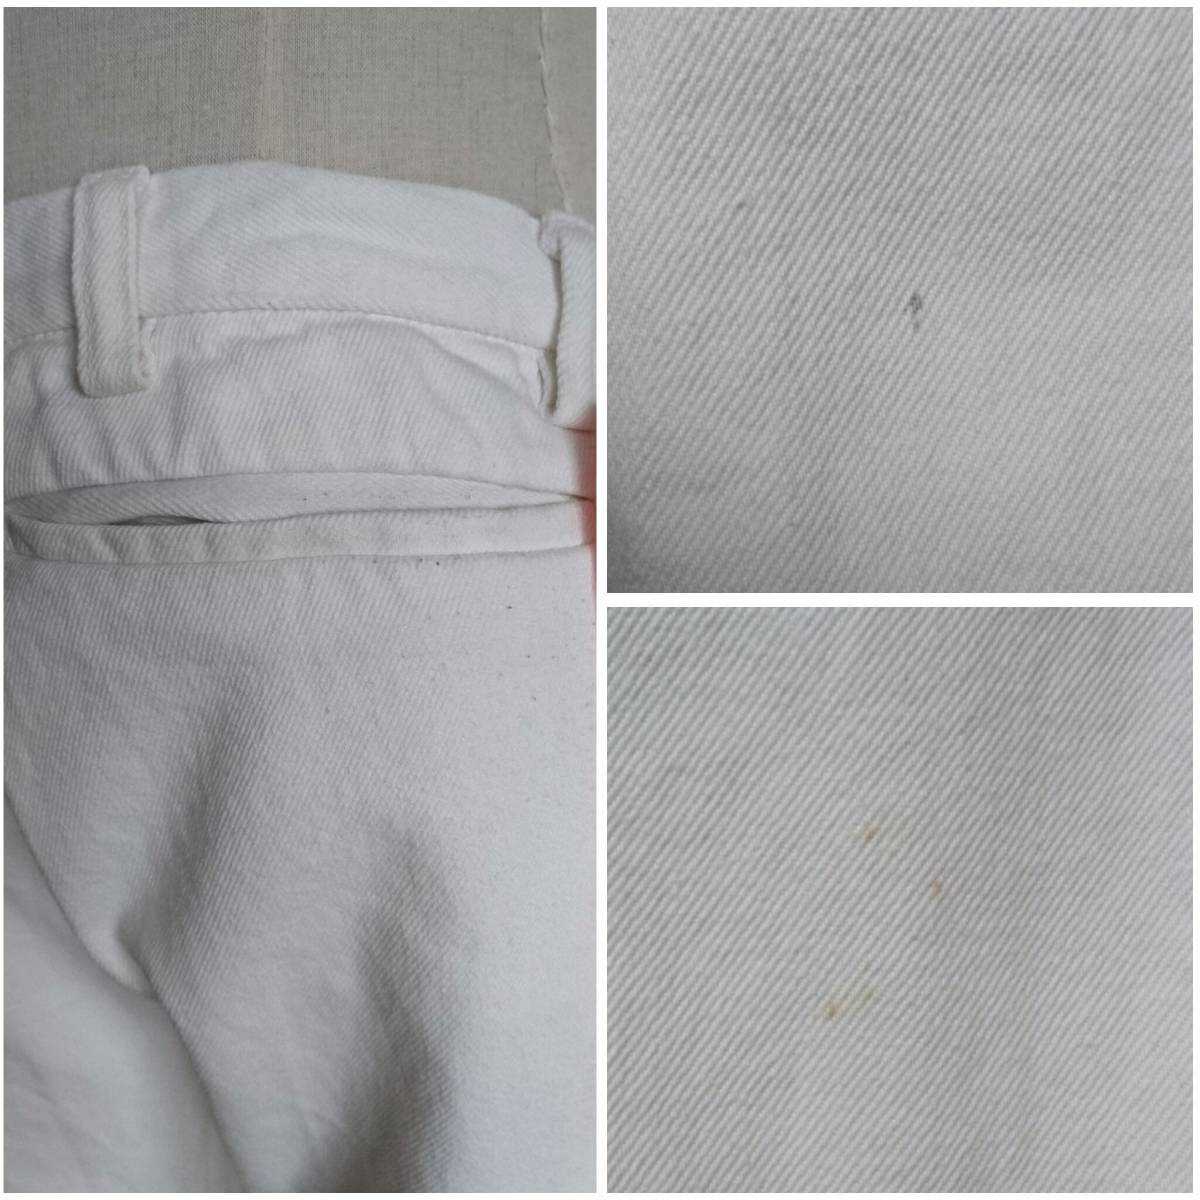 COSMIC WONDER コズミックワンダー パンツ ホワイト 白 リボン フリル フリルパンツ Pants denim デニム デニムパンツ ホワイトデニム レア_※ダメージのご確認お願いいたします。